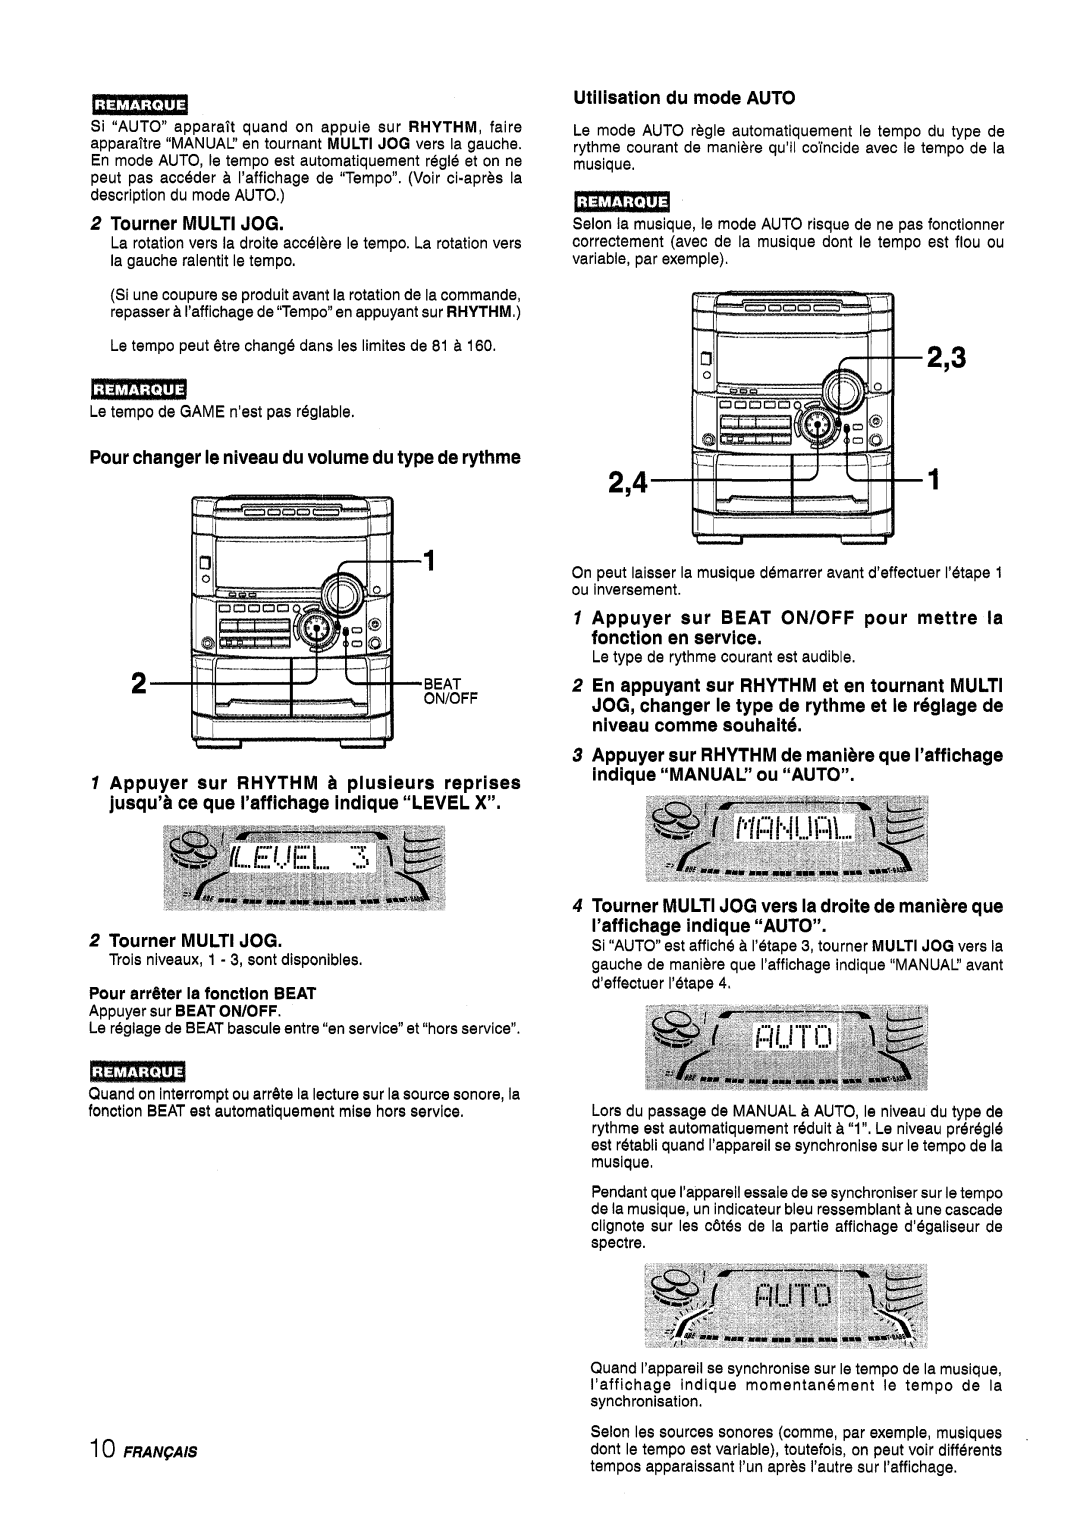 Sony NSX-A767 manual Ems3ml, 2,3 2,41, Tourner MULTI JOG, Pour changer Ie niveau du volume du type de rythme 